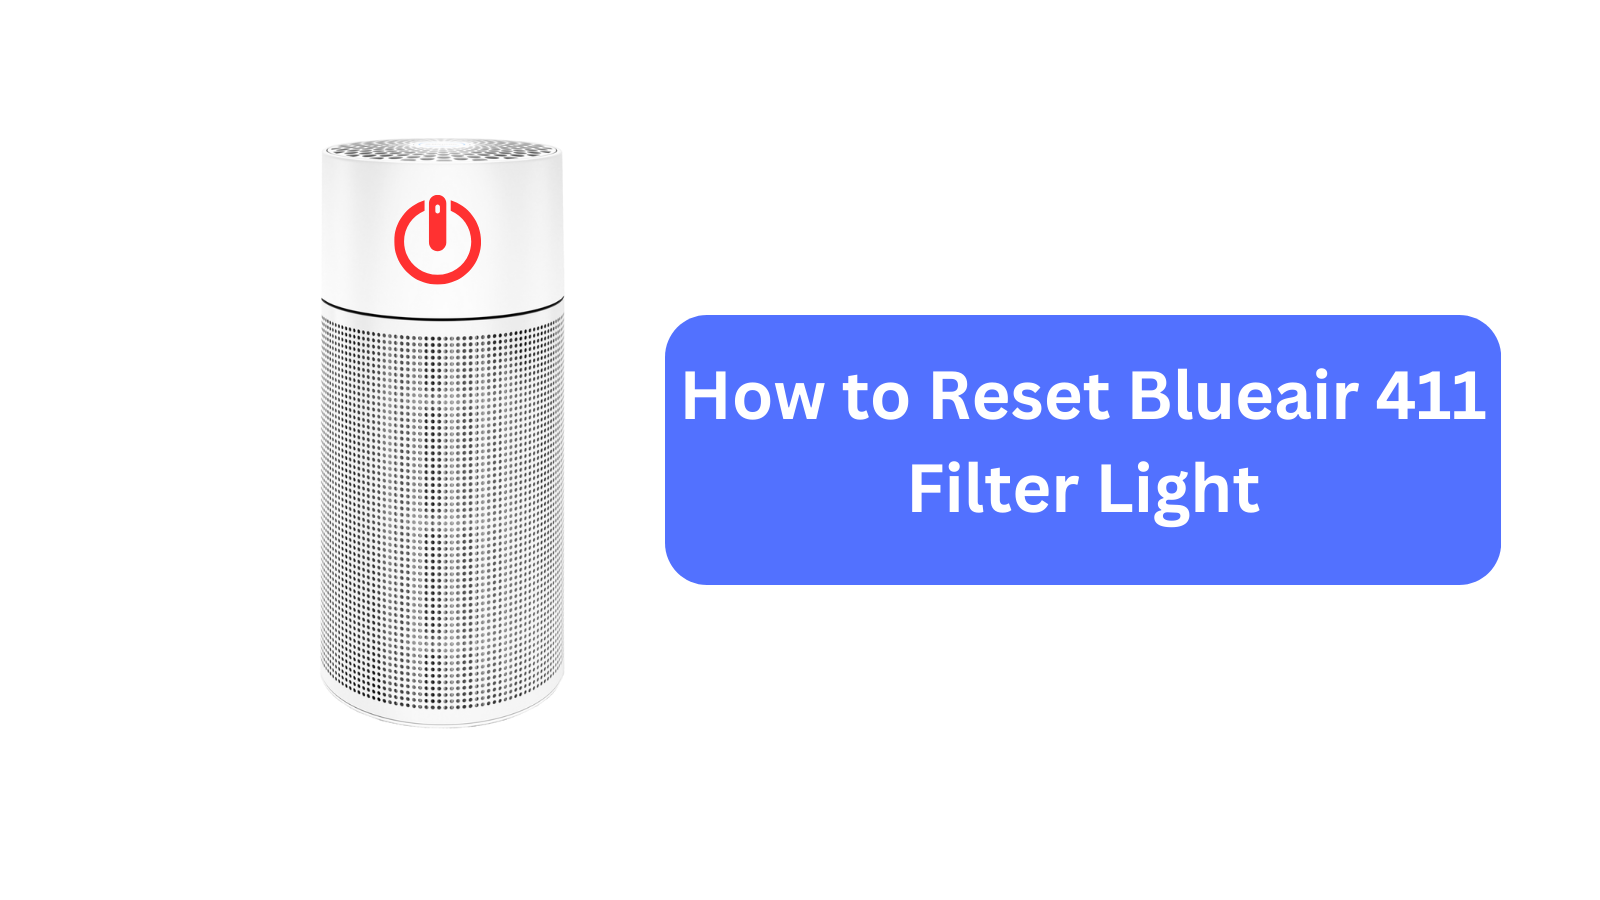 How to Reset Blueair 411 Filter Light